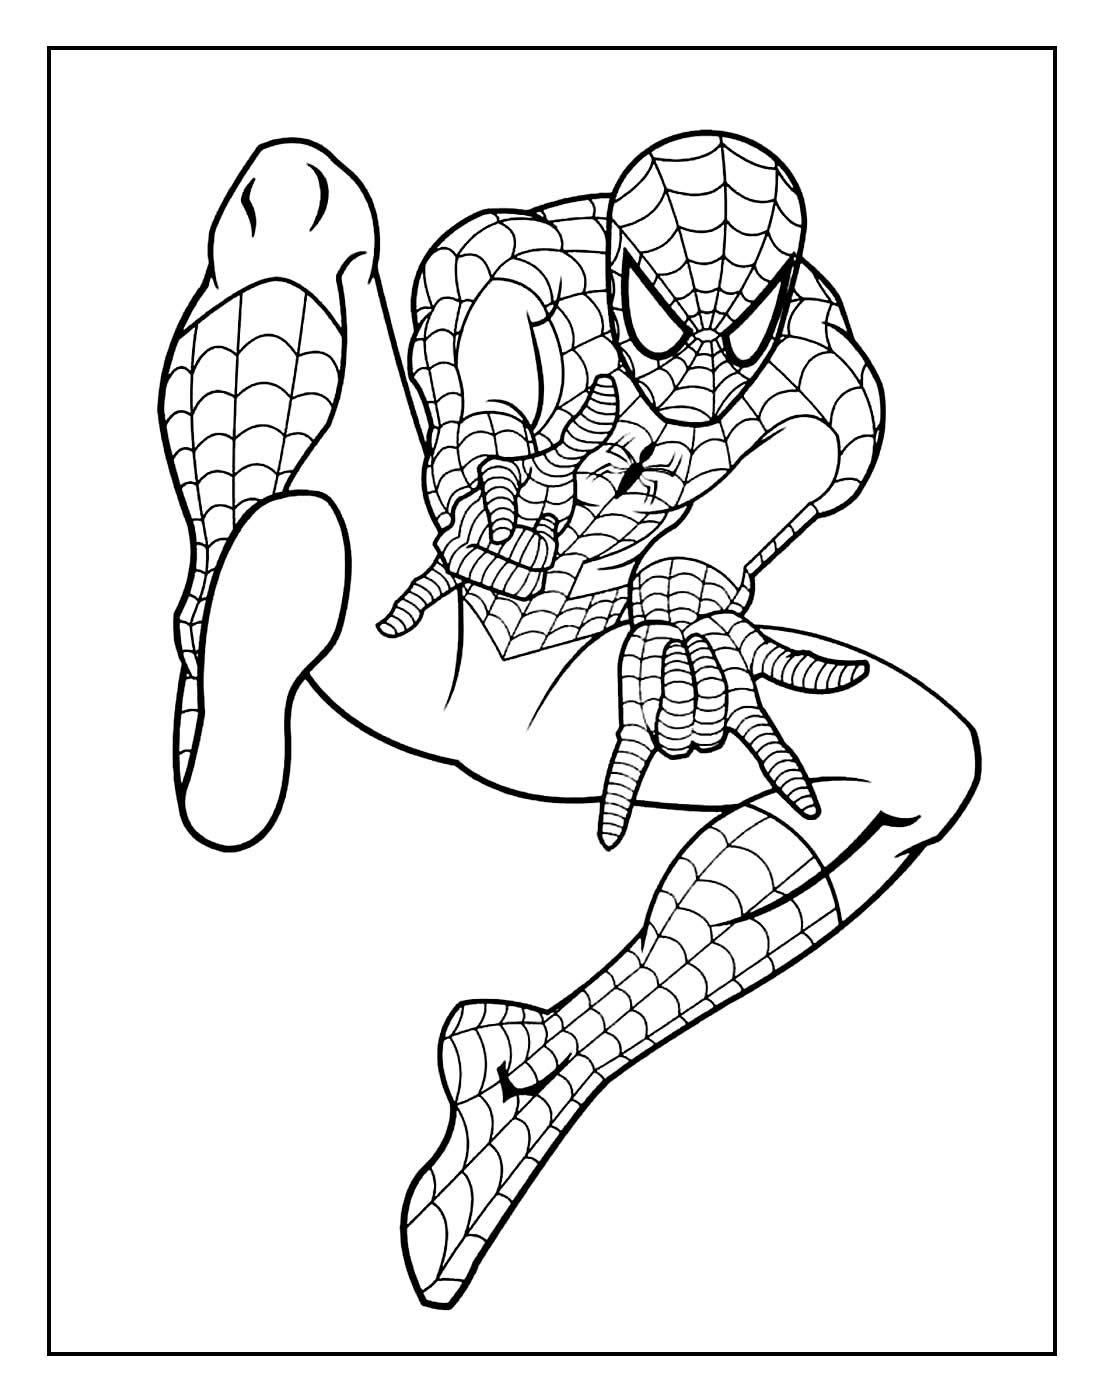 Desenho para colorir do Homem-Aranha